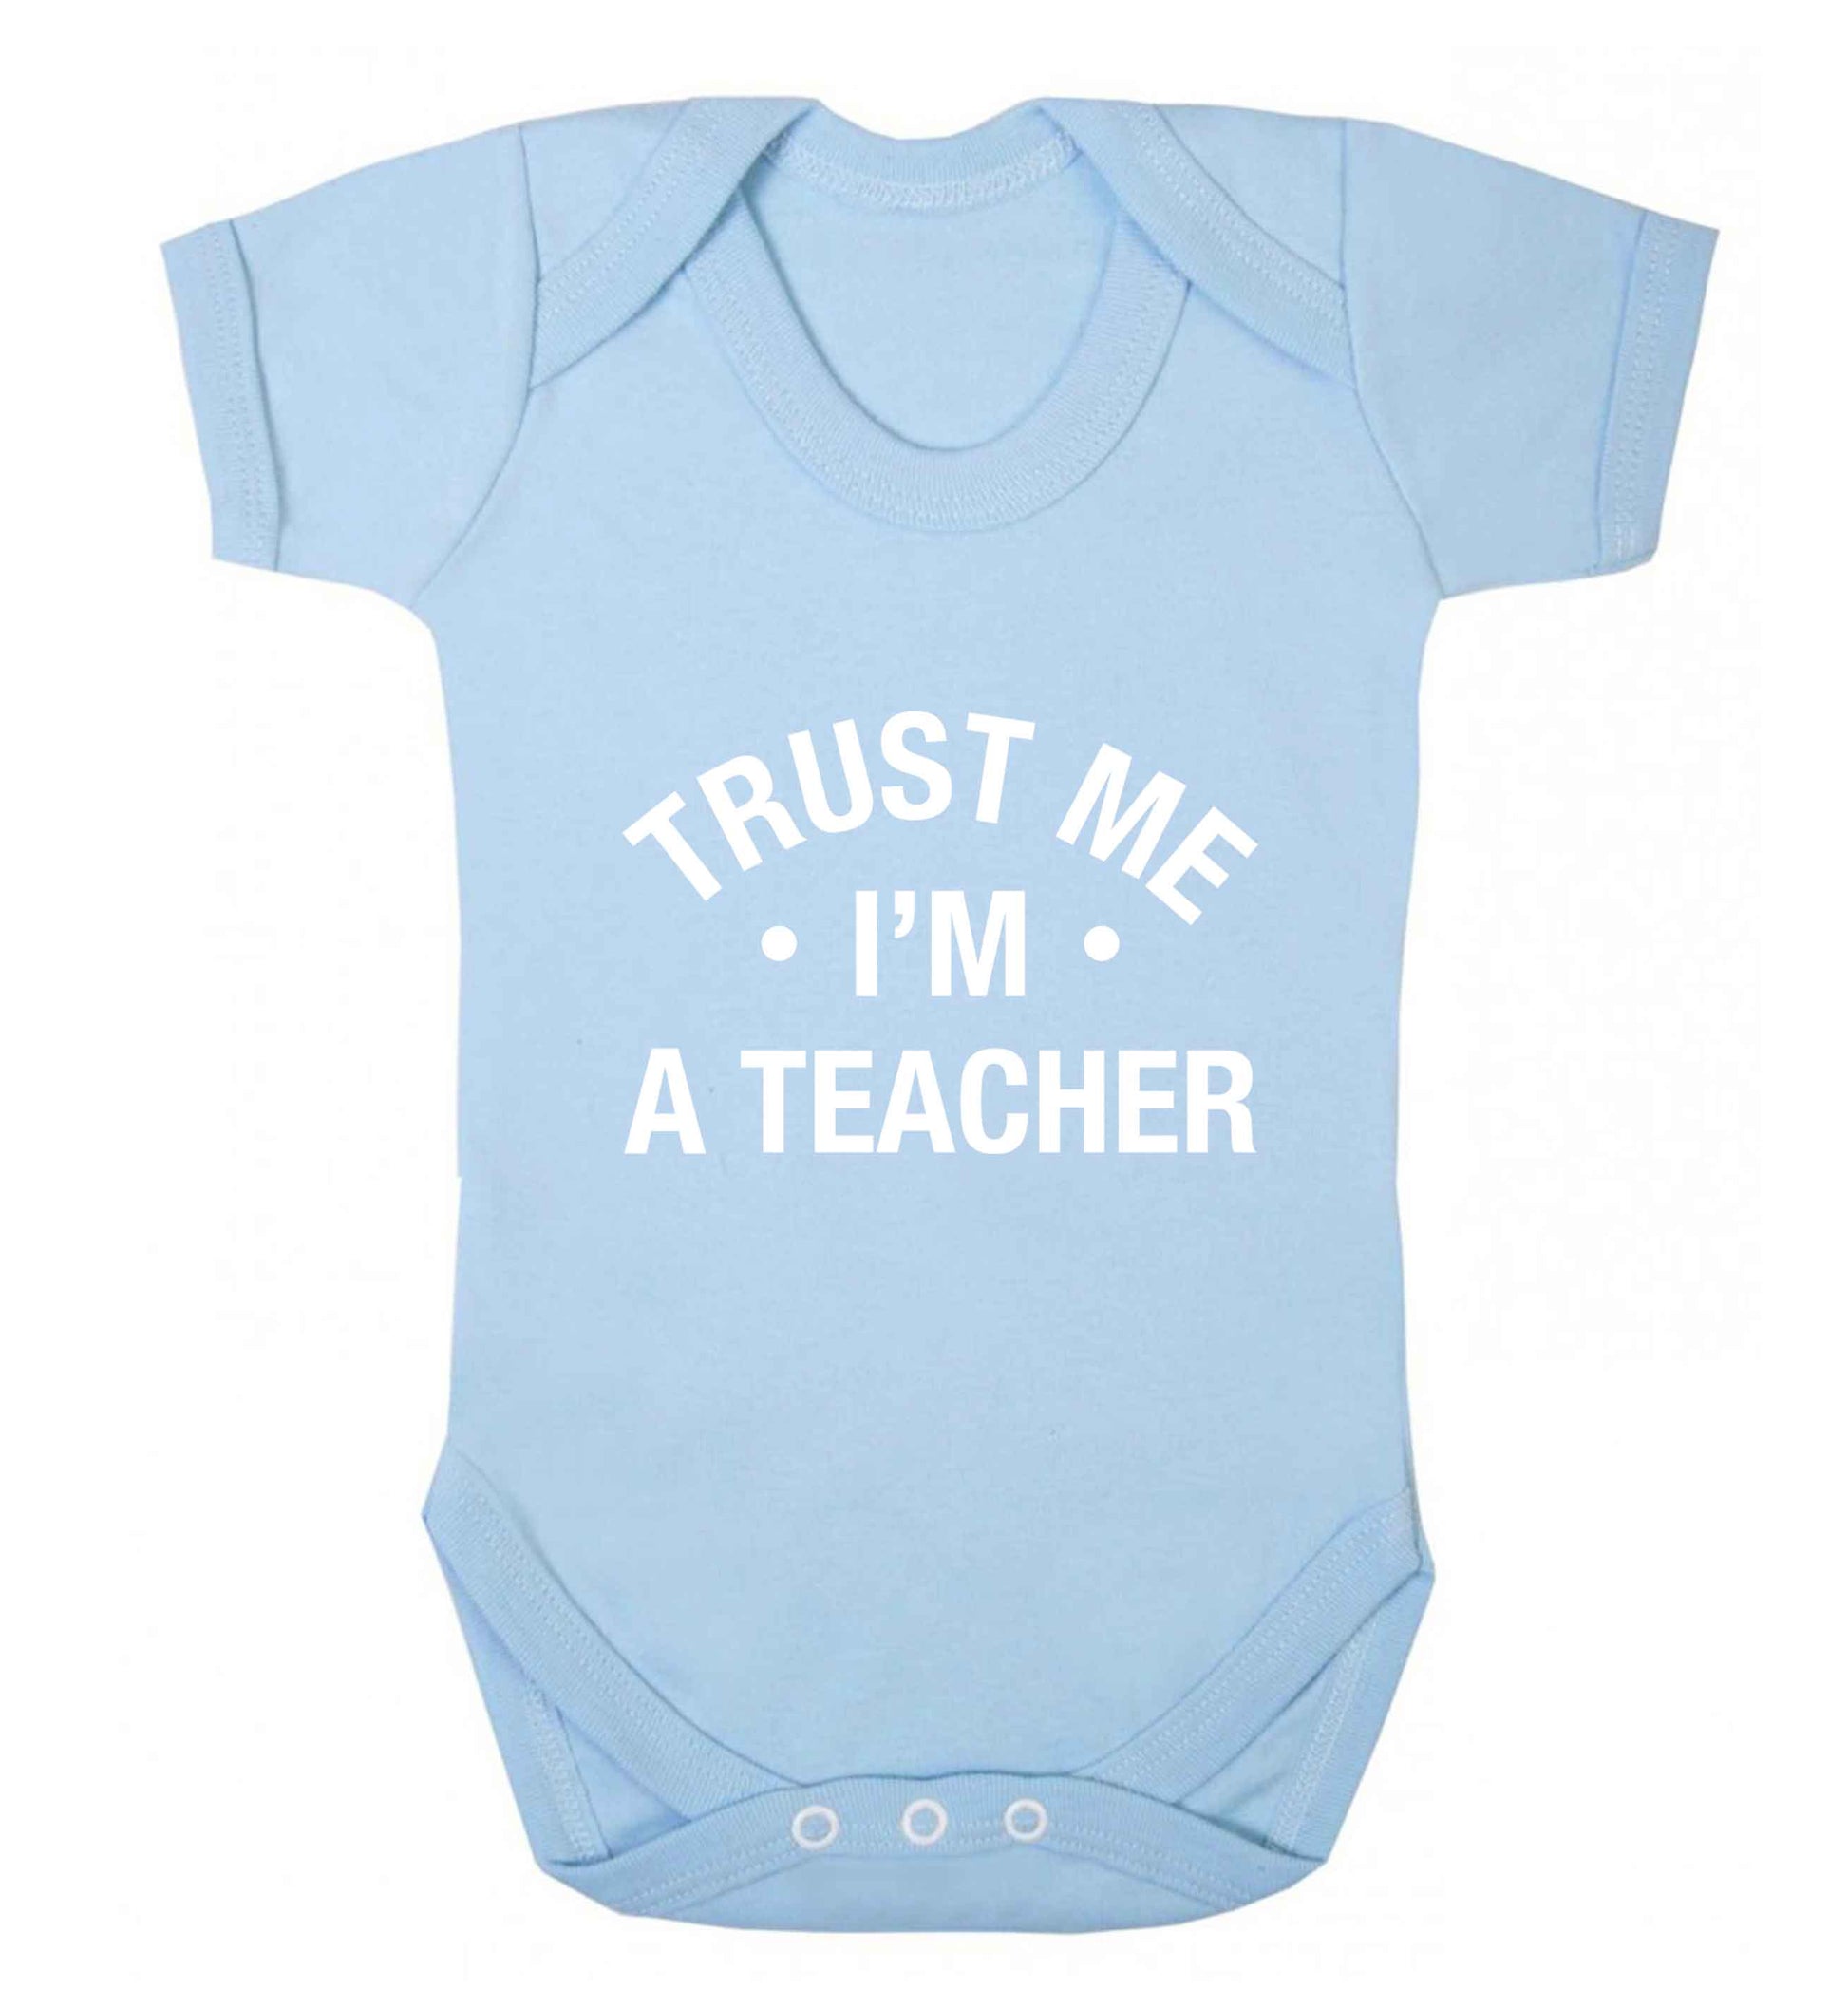 Trust me I'm a teacher baby vest pale blue 18-24 months